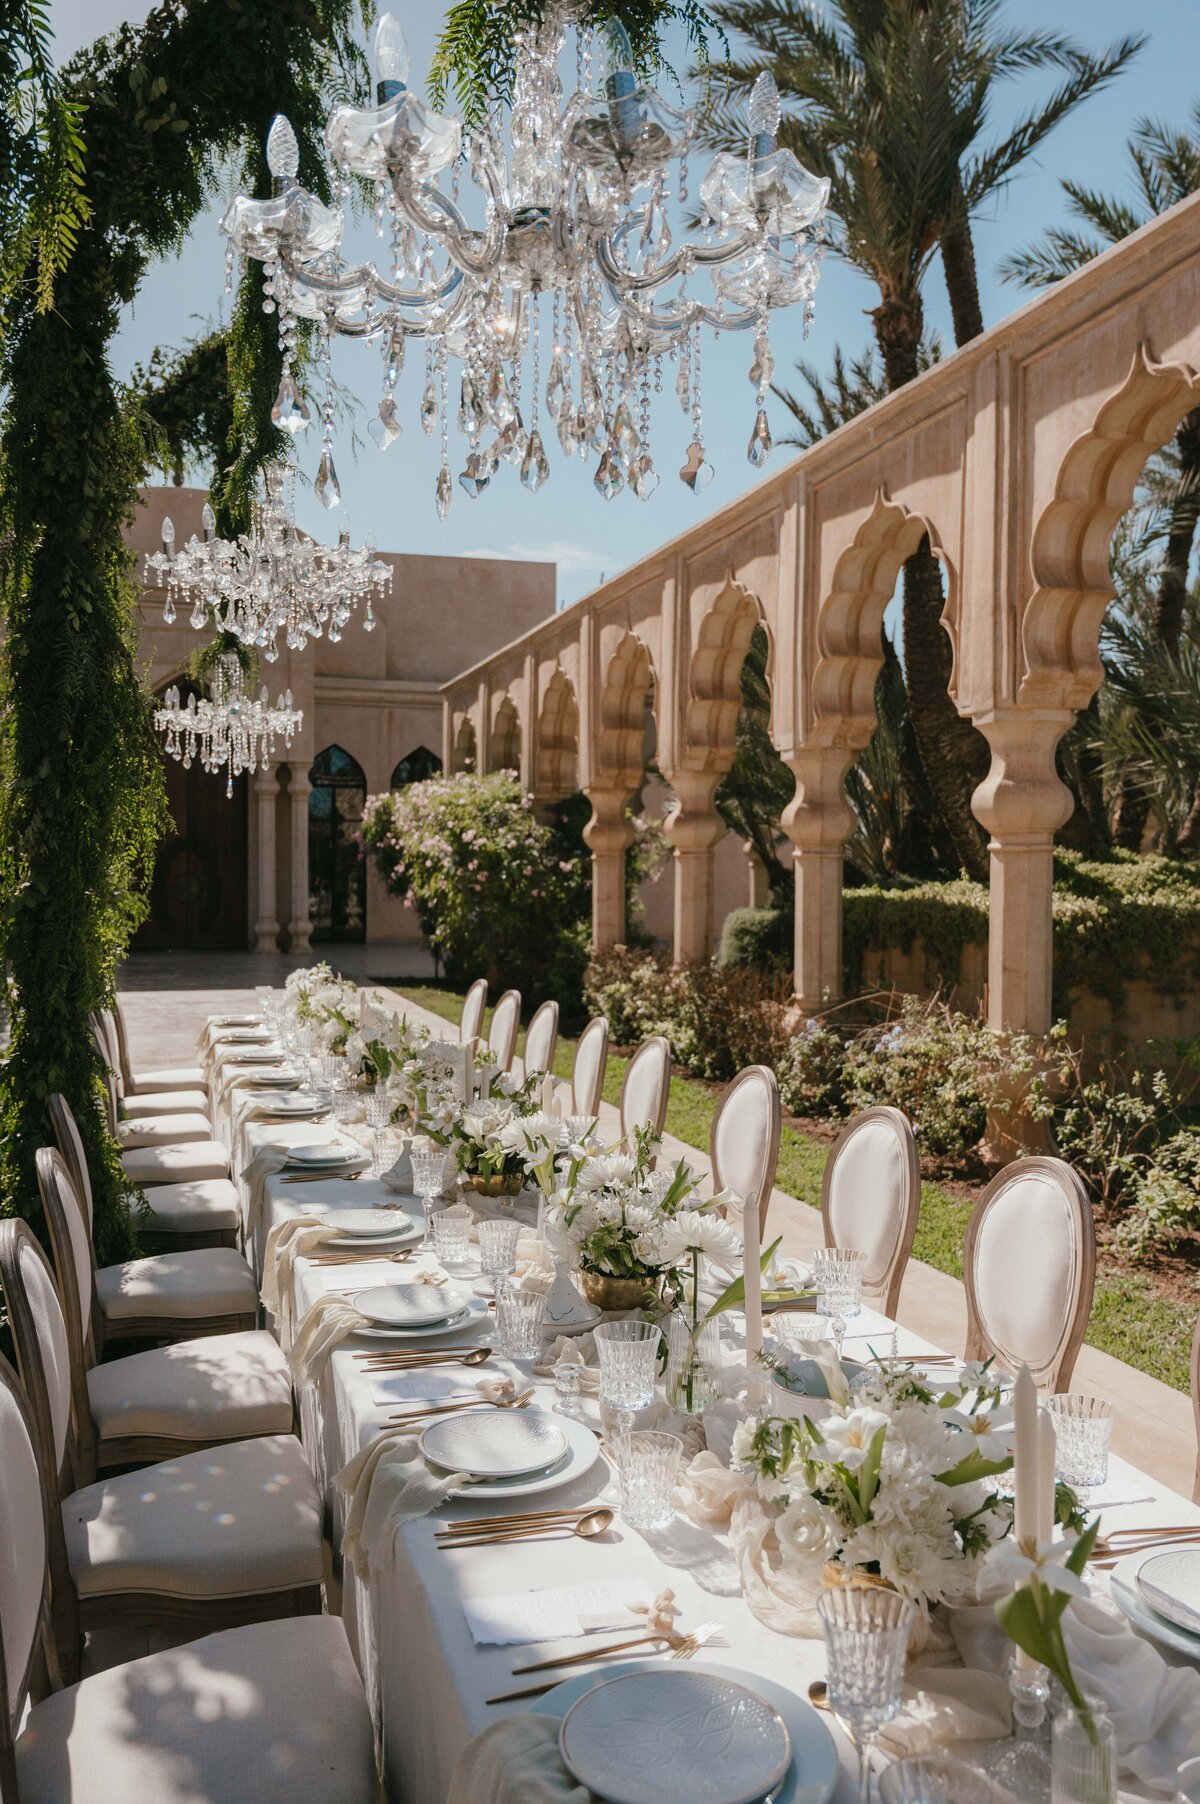 Wedding at Palais Namaskar in Morocco.